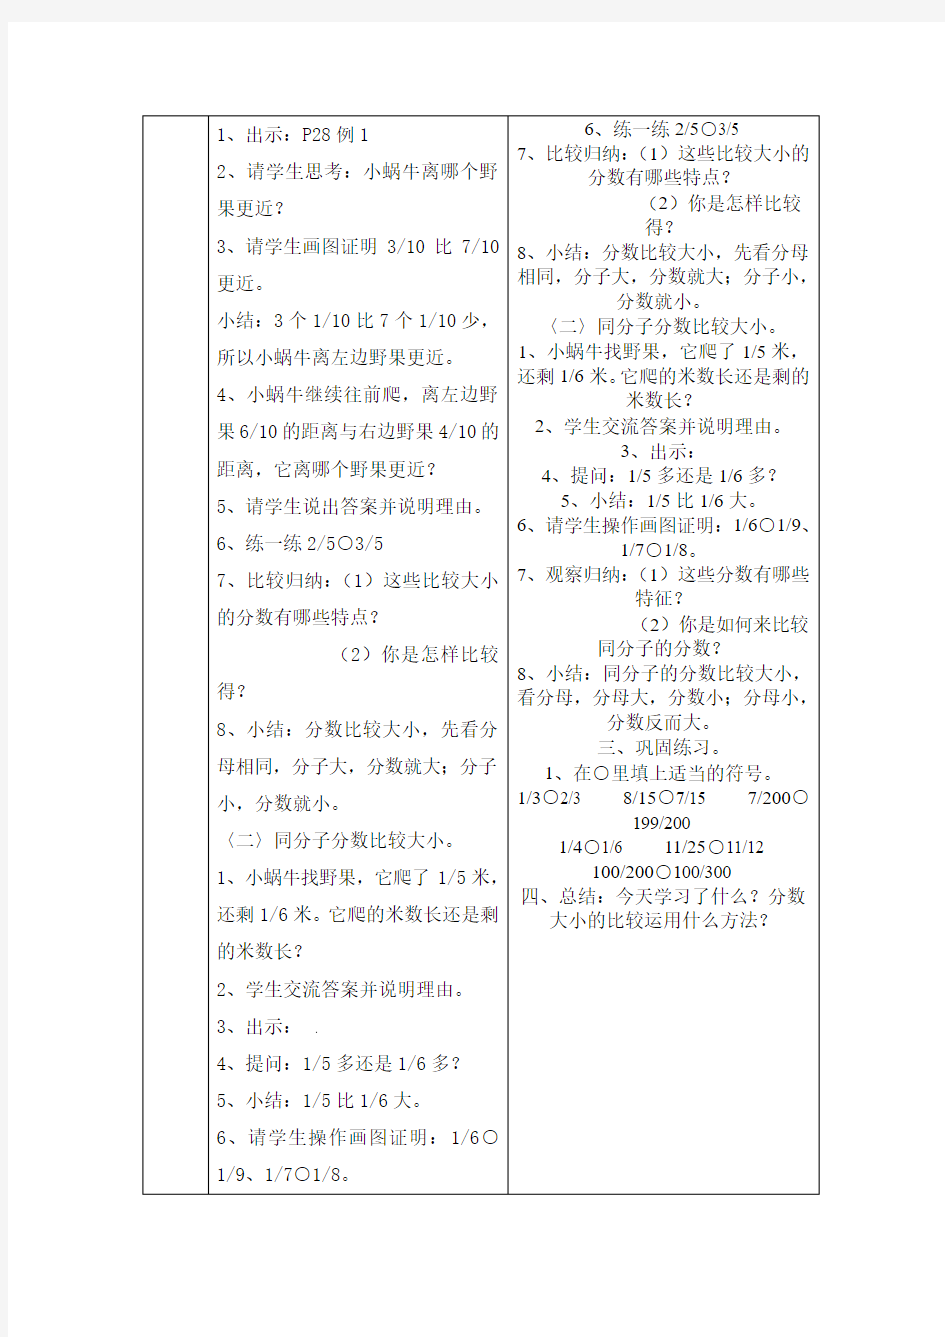 上海市中小学特殊学生随班就读个别化教学计划三-1